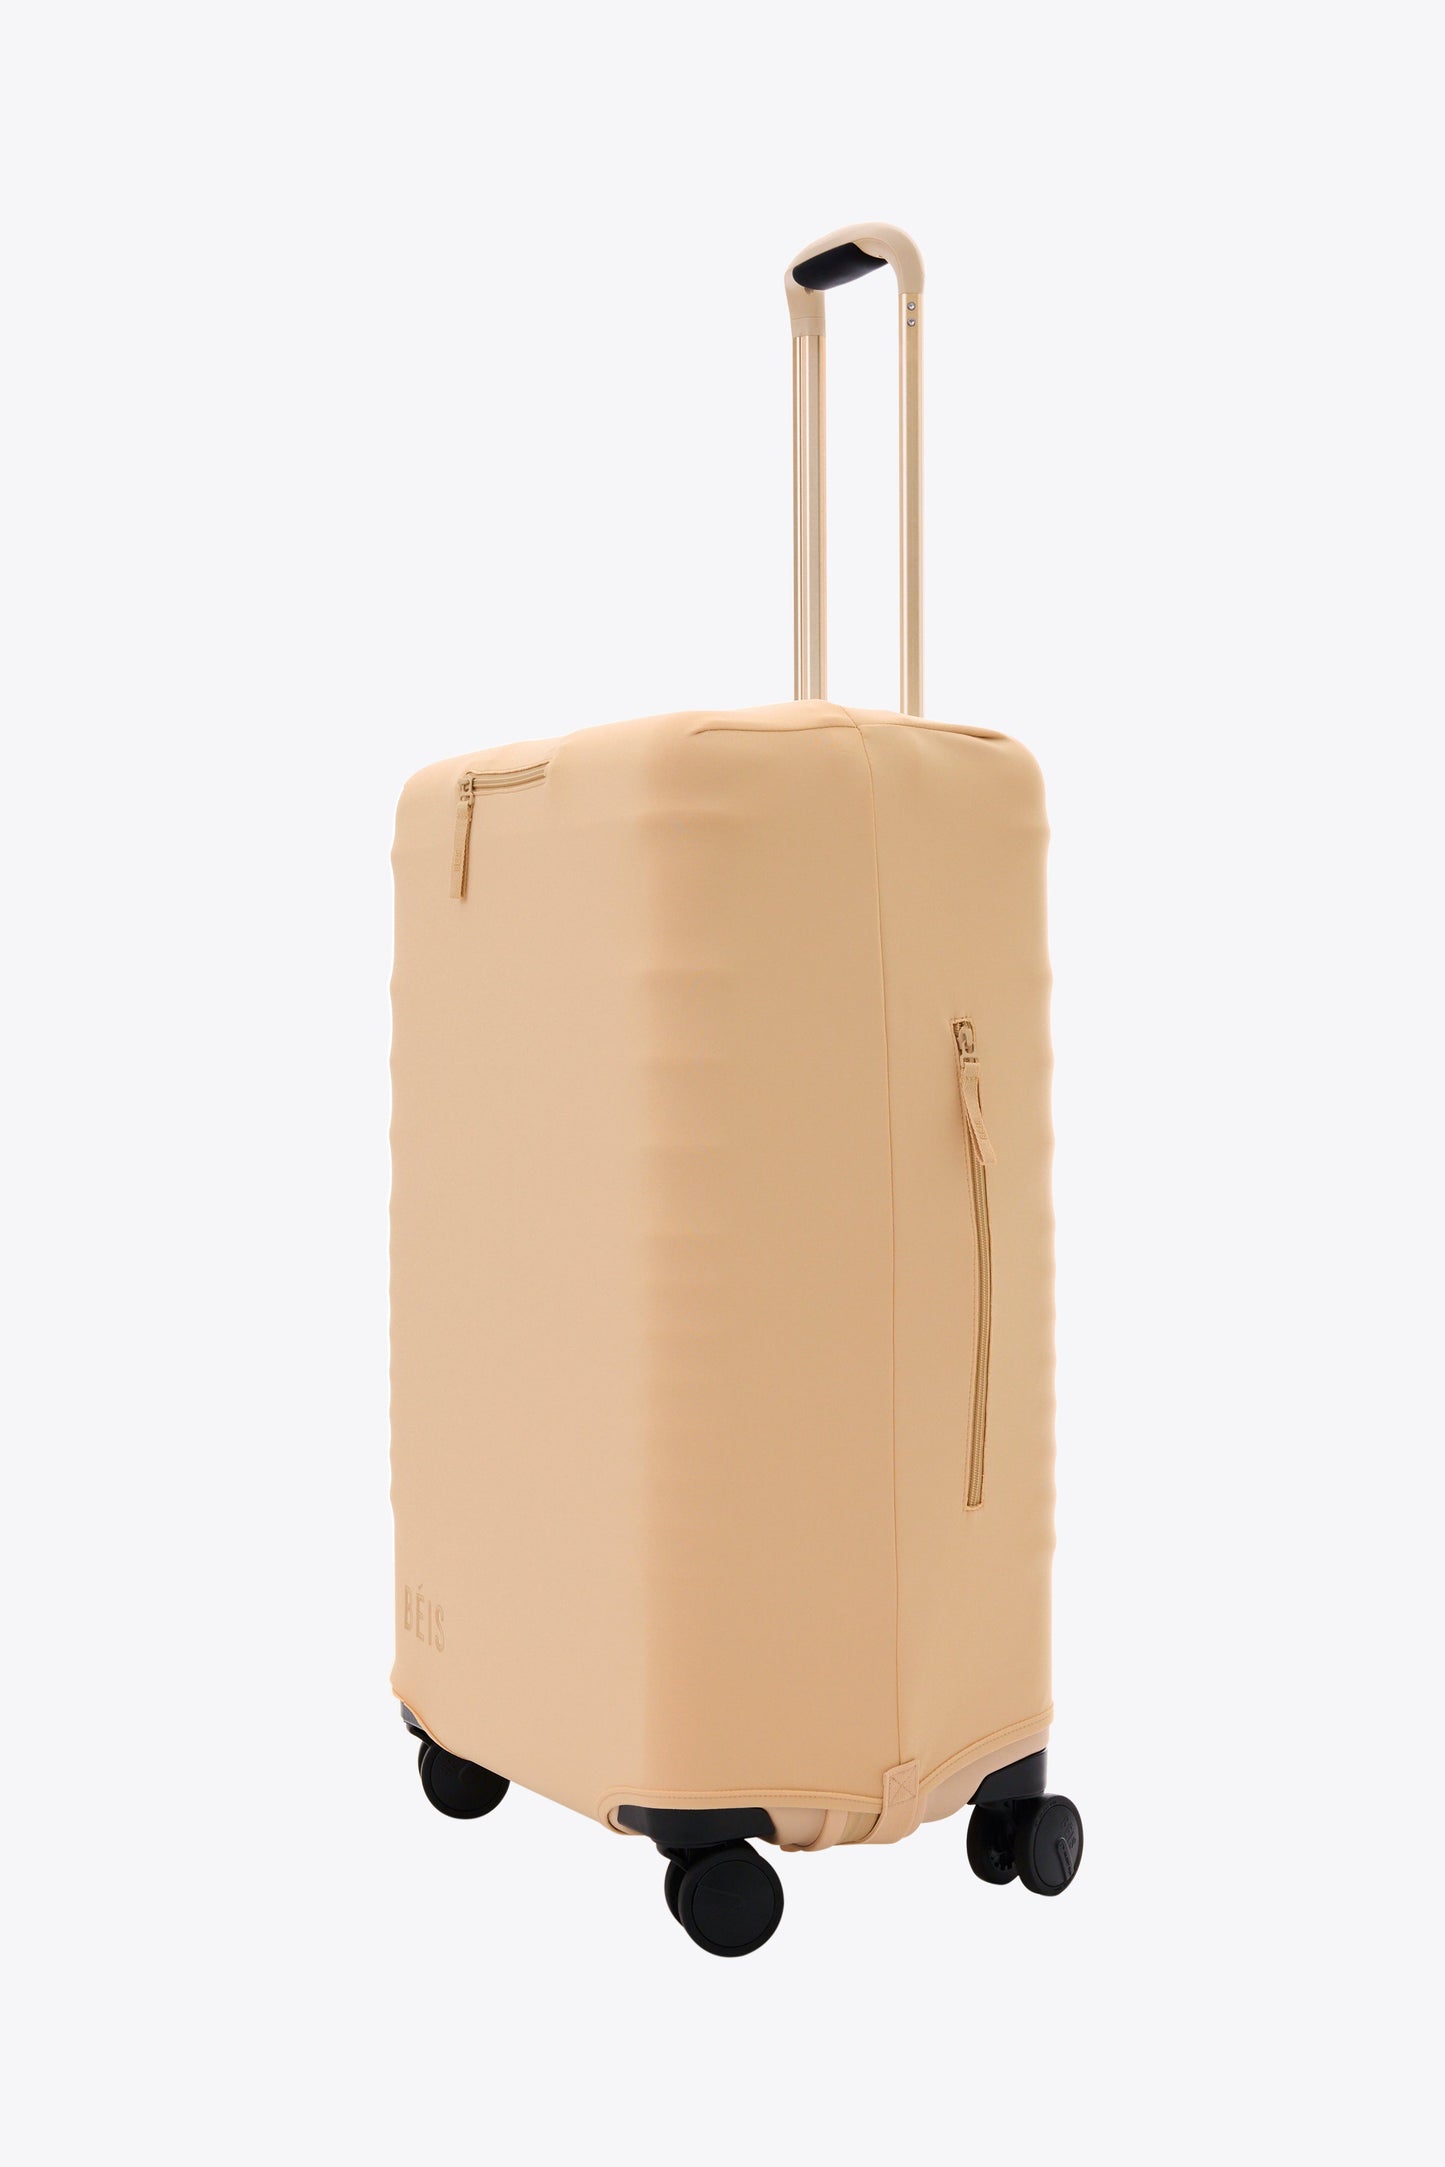 Le couvre-bagages d'enregistrement moyen en beige